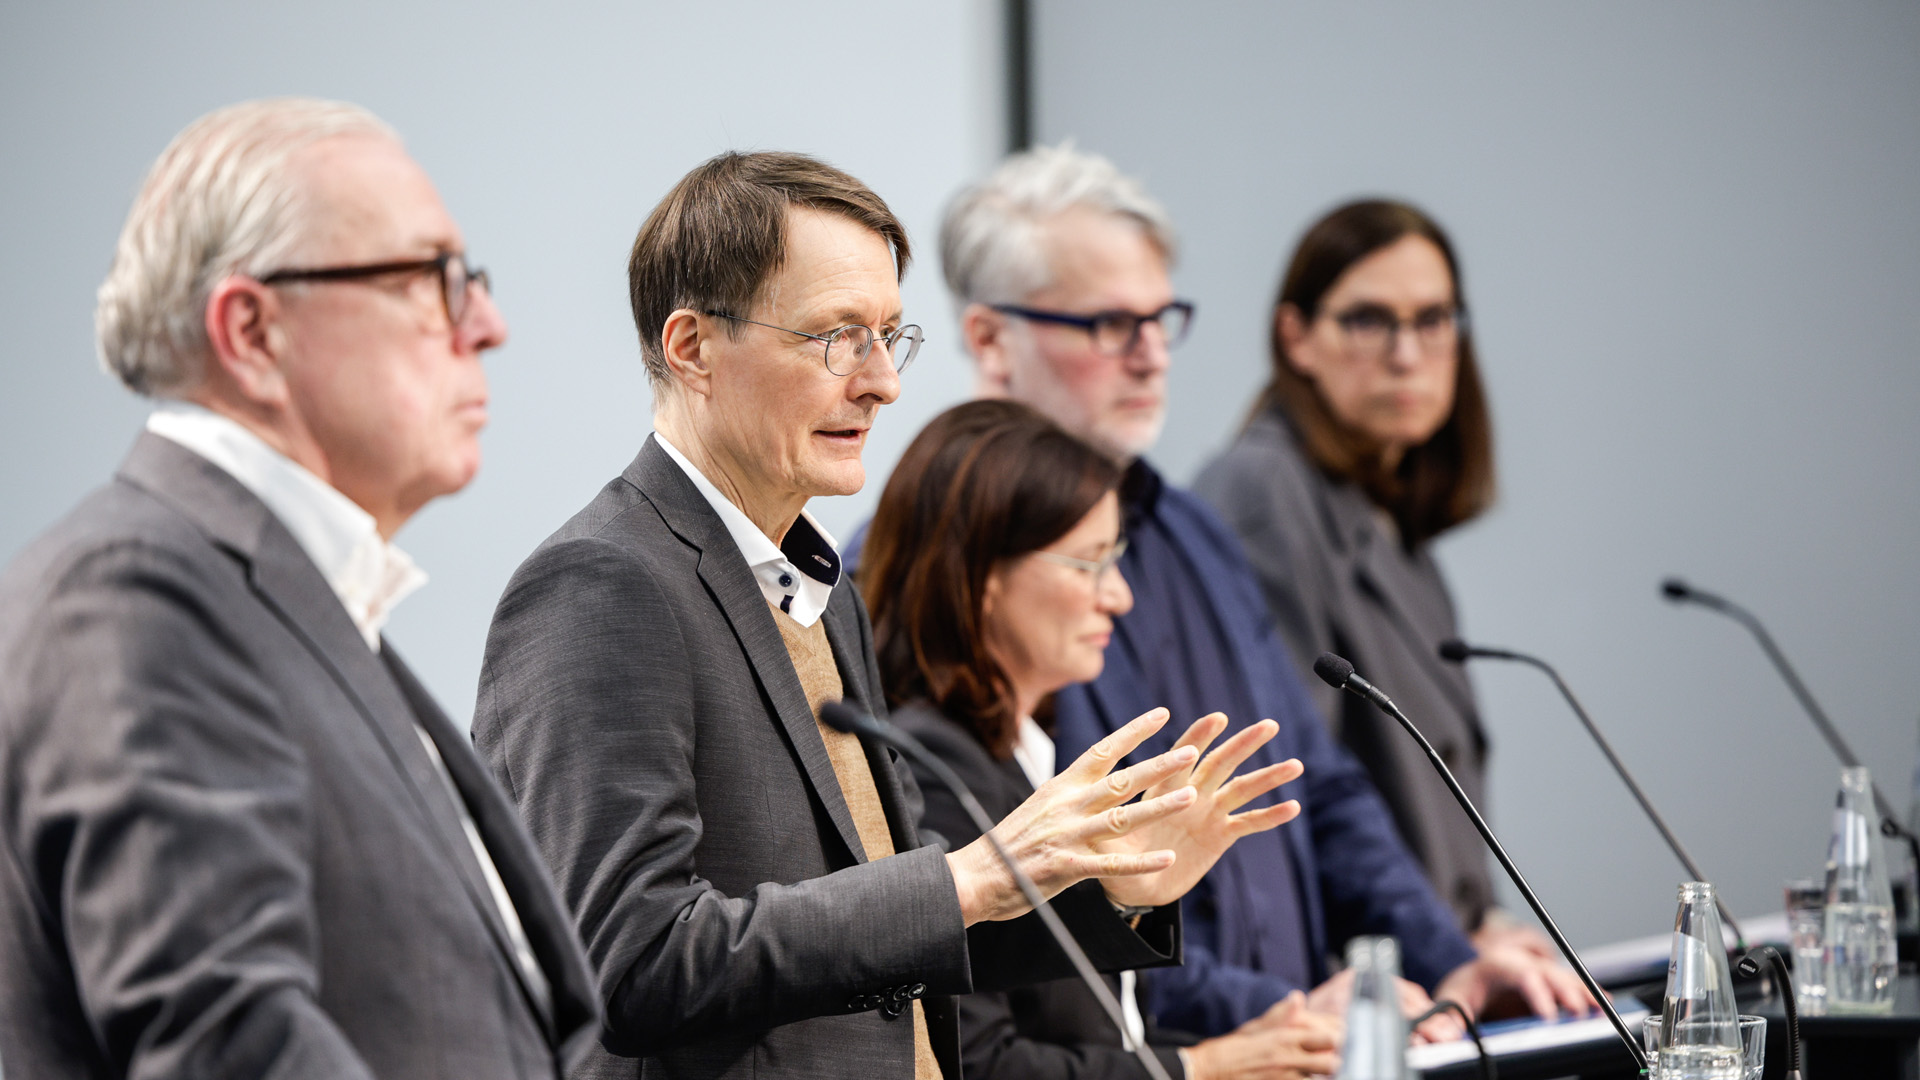 Karl Lauterbach mit Vertreterinnen und Vertretern der niedergelassenen Ärzteschaft während einer Pressekonferenz.